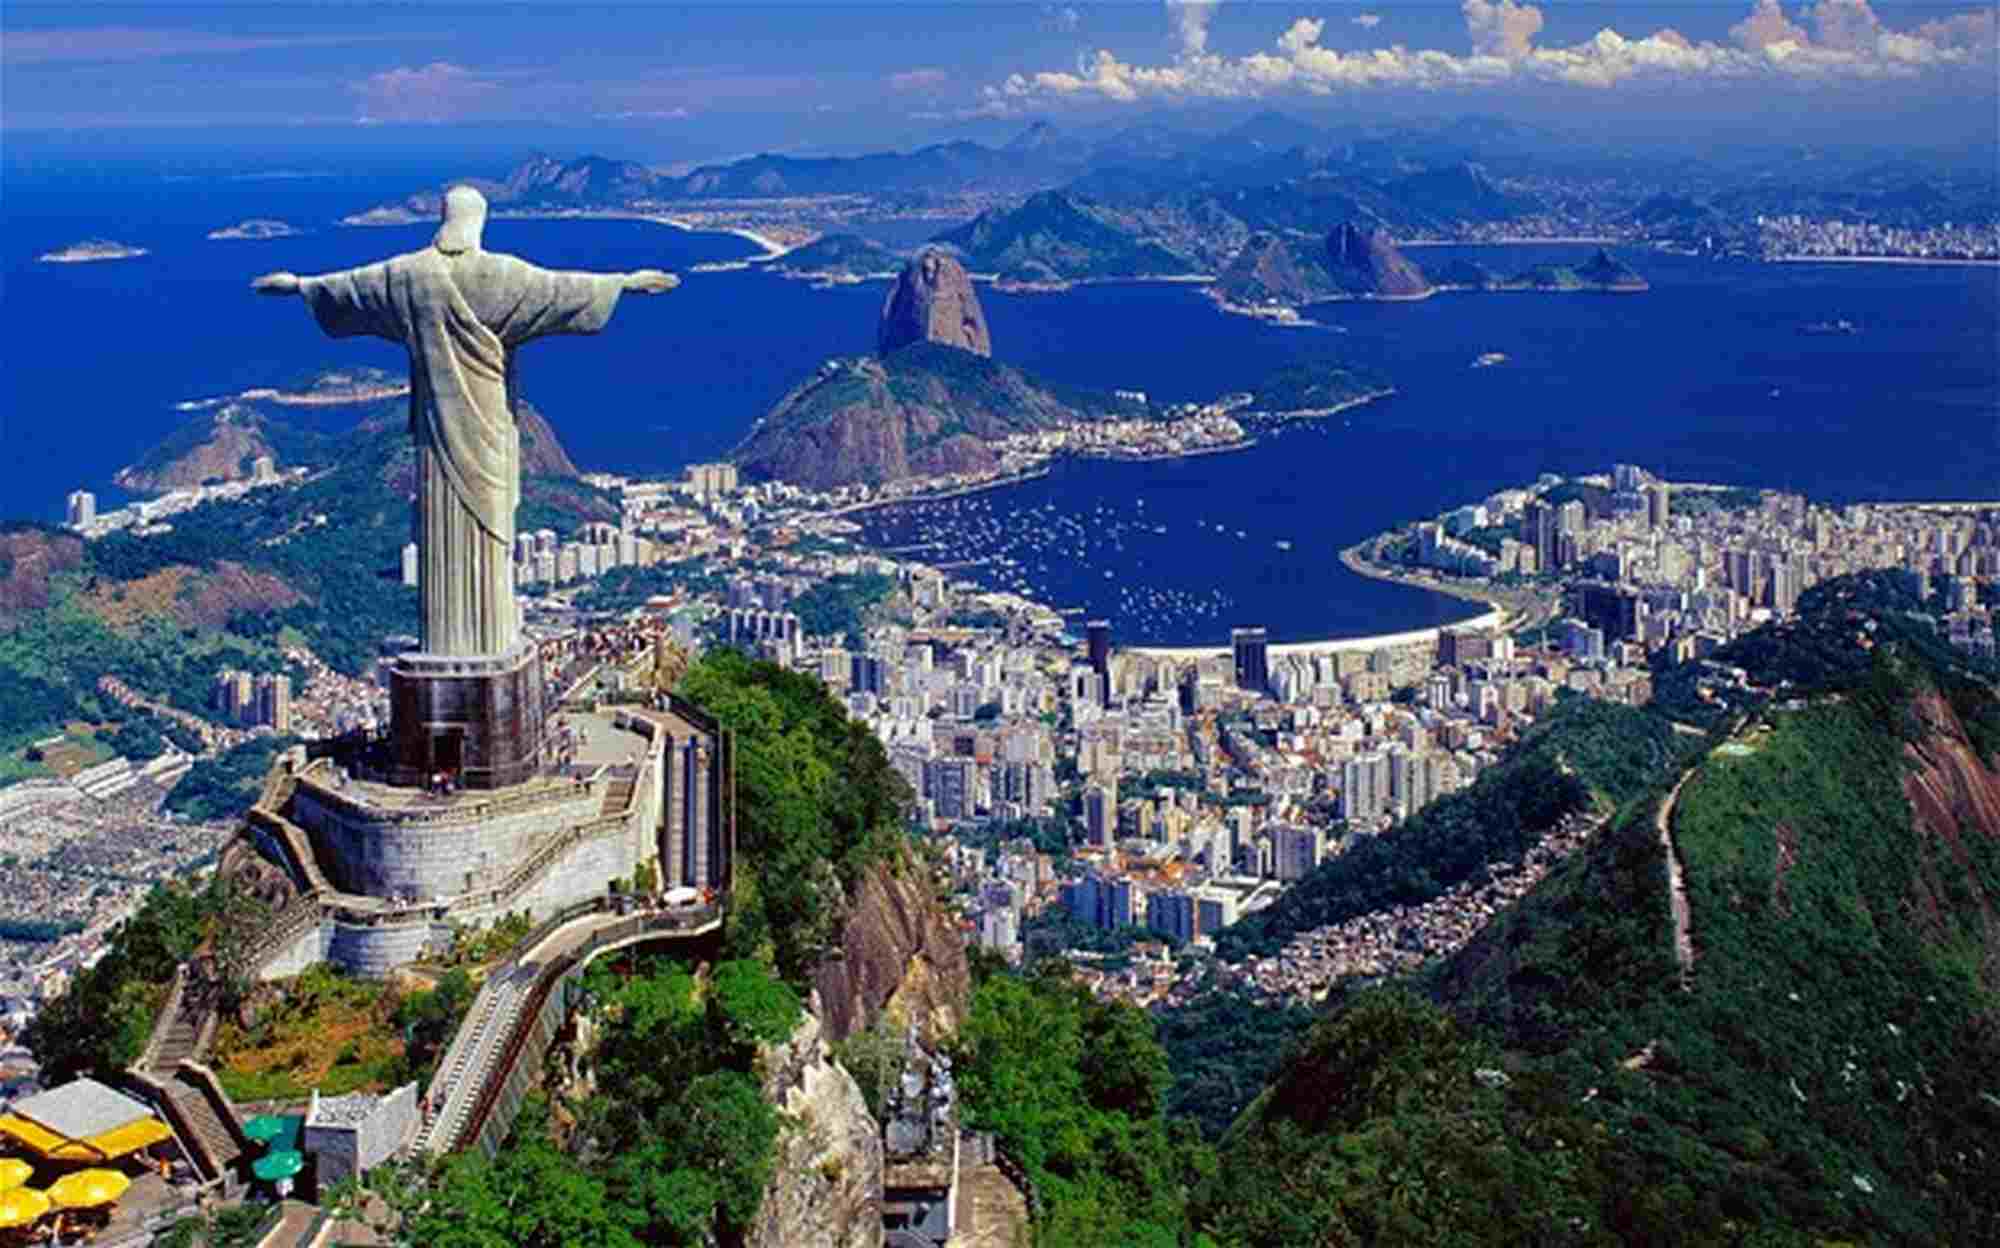 Достопримечательности каждых стран. Бразилия Рио де Жанейро. Рио-де-Жанейро (город в Бразилии). Статуя Христа в Аргентине. Буэнос Айрес статуя Христа.